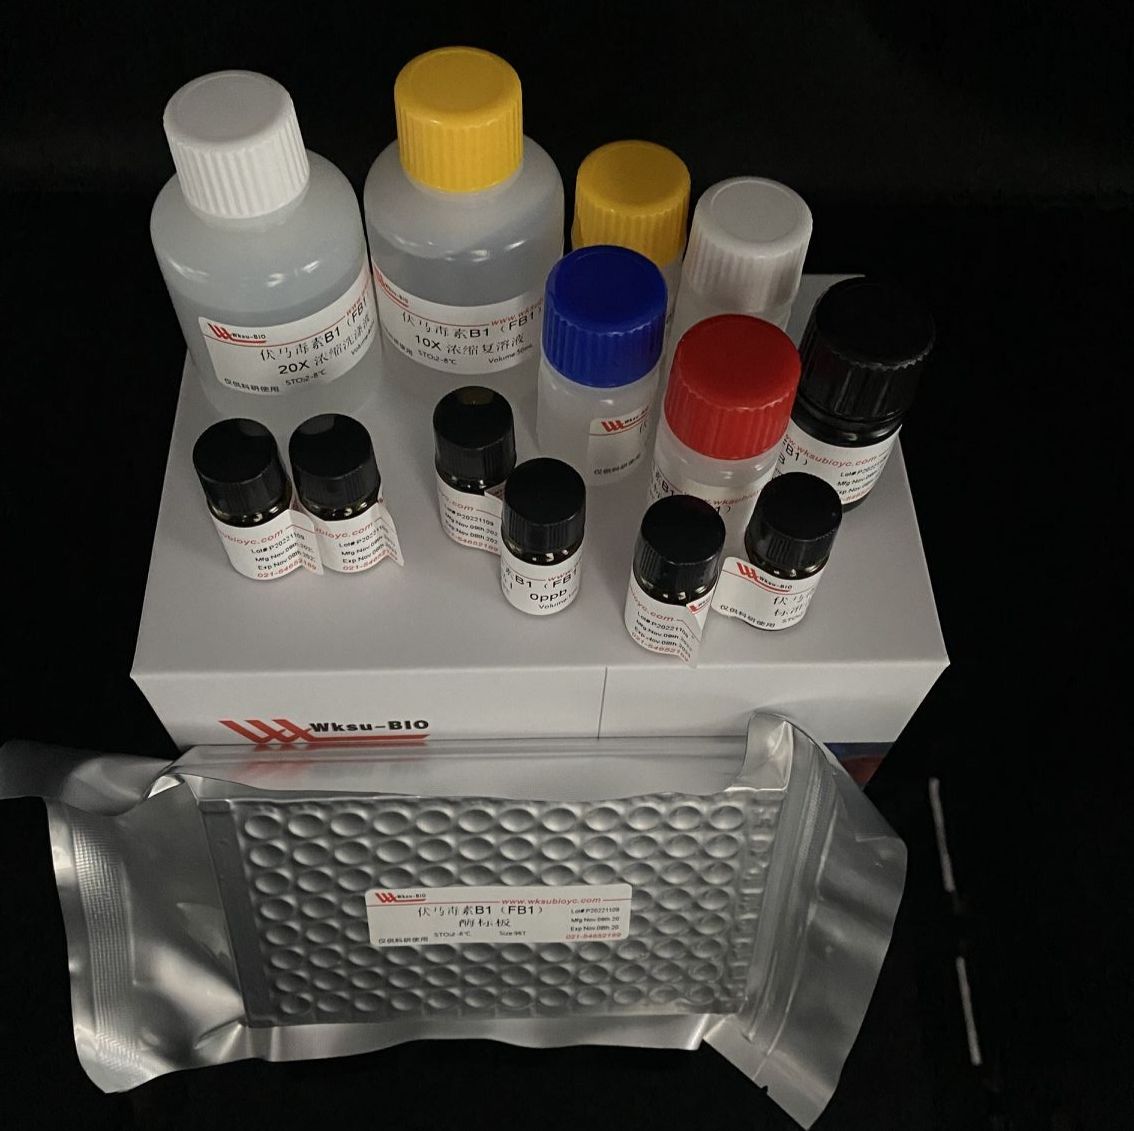 土壤核酸酶活性测定试剂盒,微板法